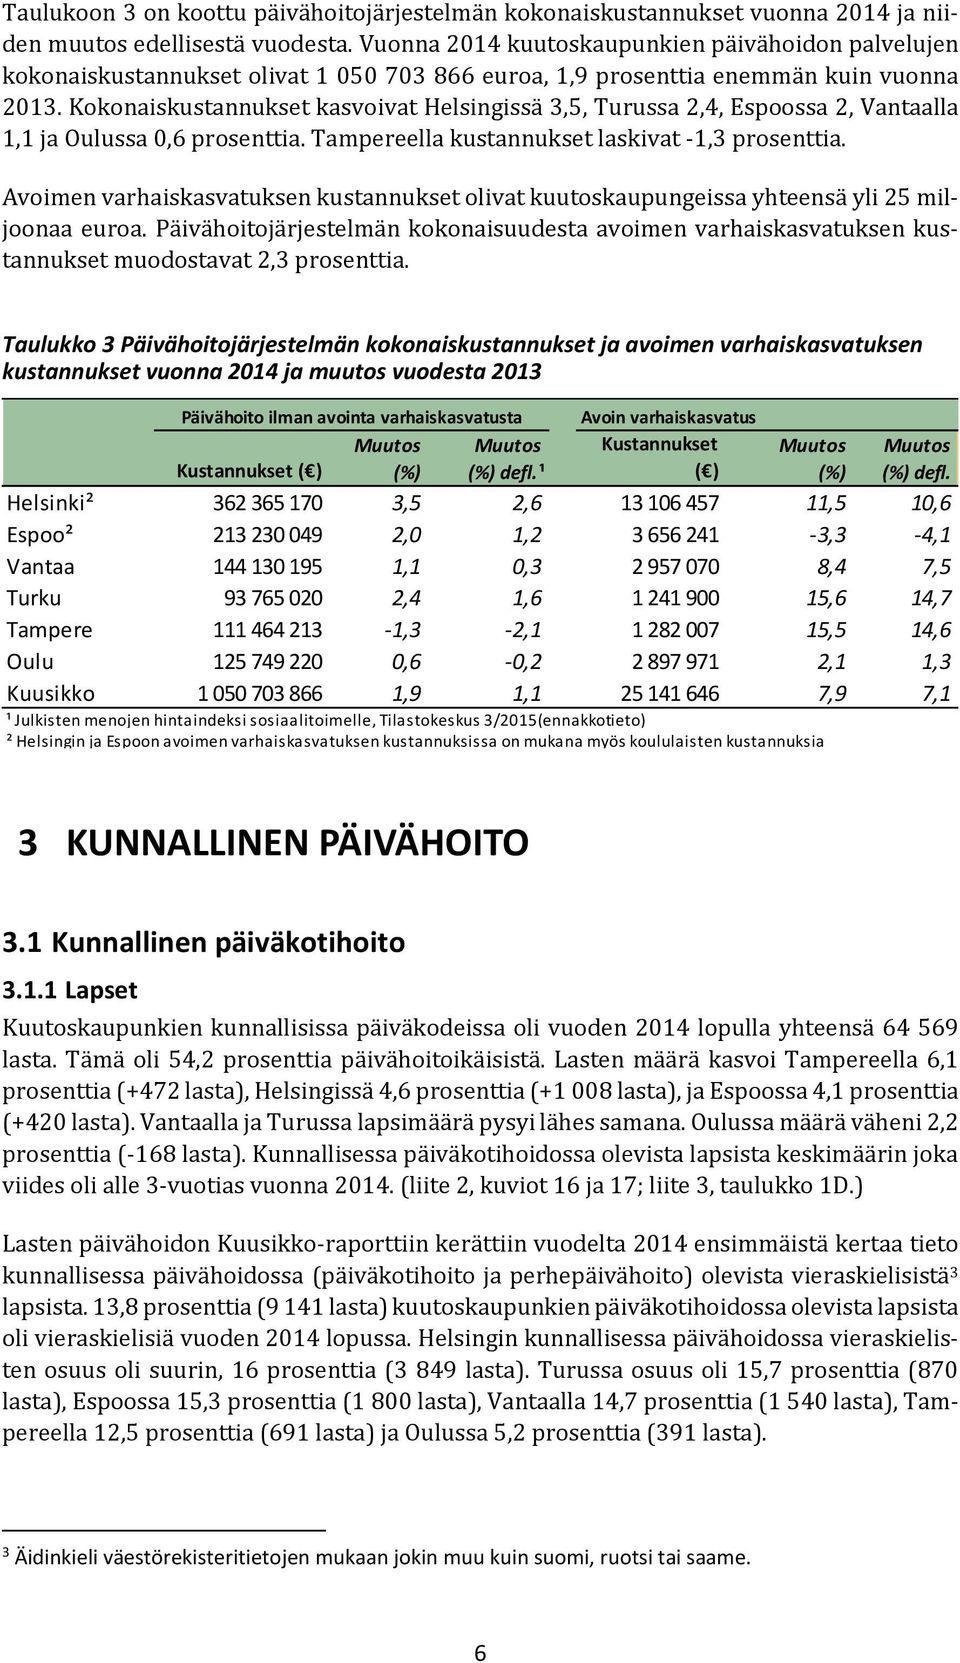 Kokonaiskustannukset kasvoivat Helsingissä 3,5, Turussa 2,4, Espoossa 2, Vantaalla 1,1 ja Oulussa 0,6 prosenttia. Tampereella kustannukset laskivat -1,3 prosenttia.